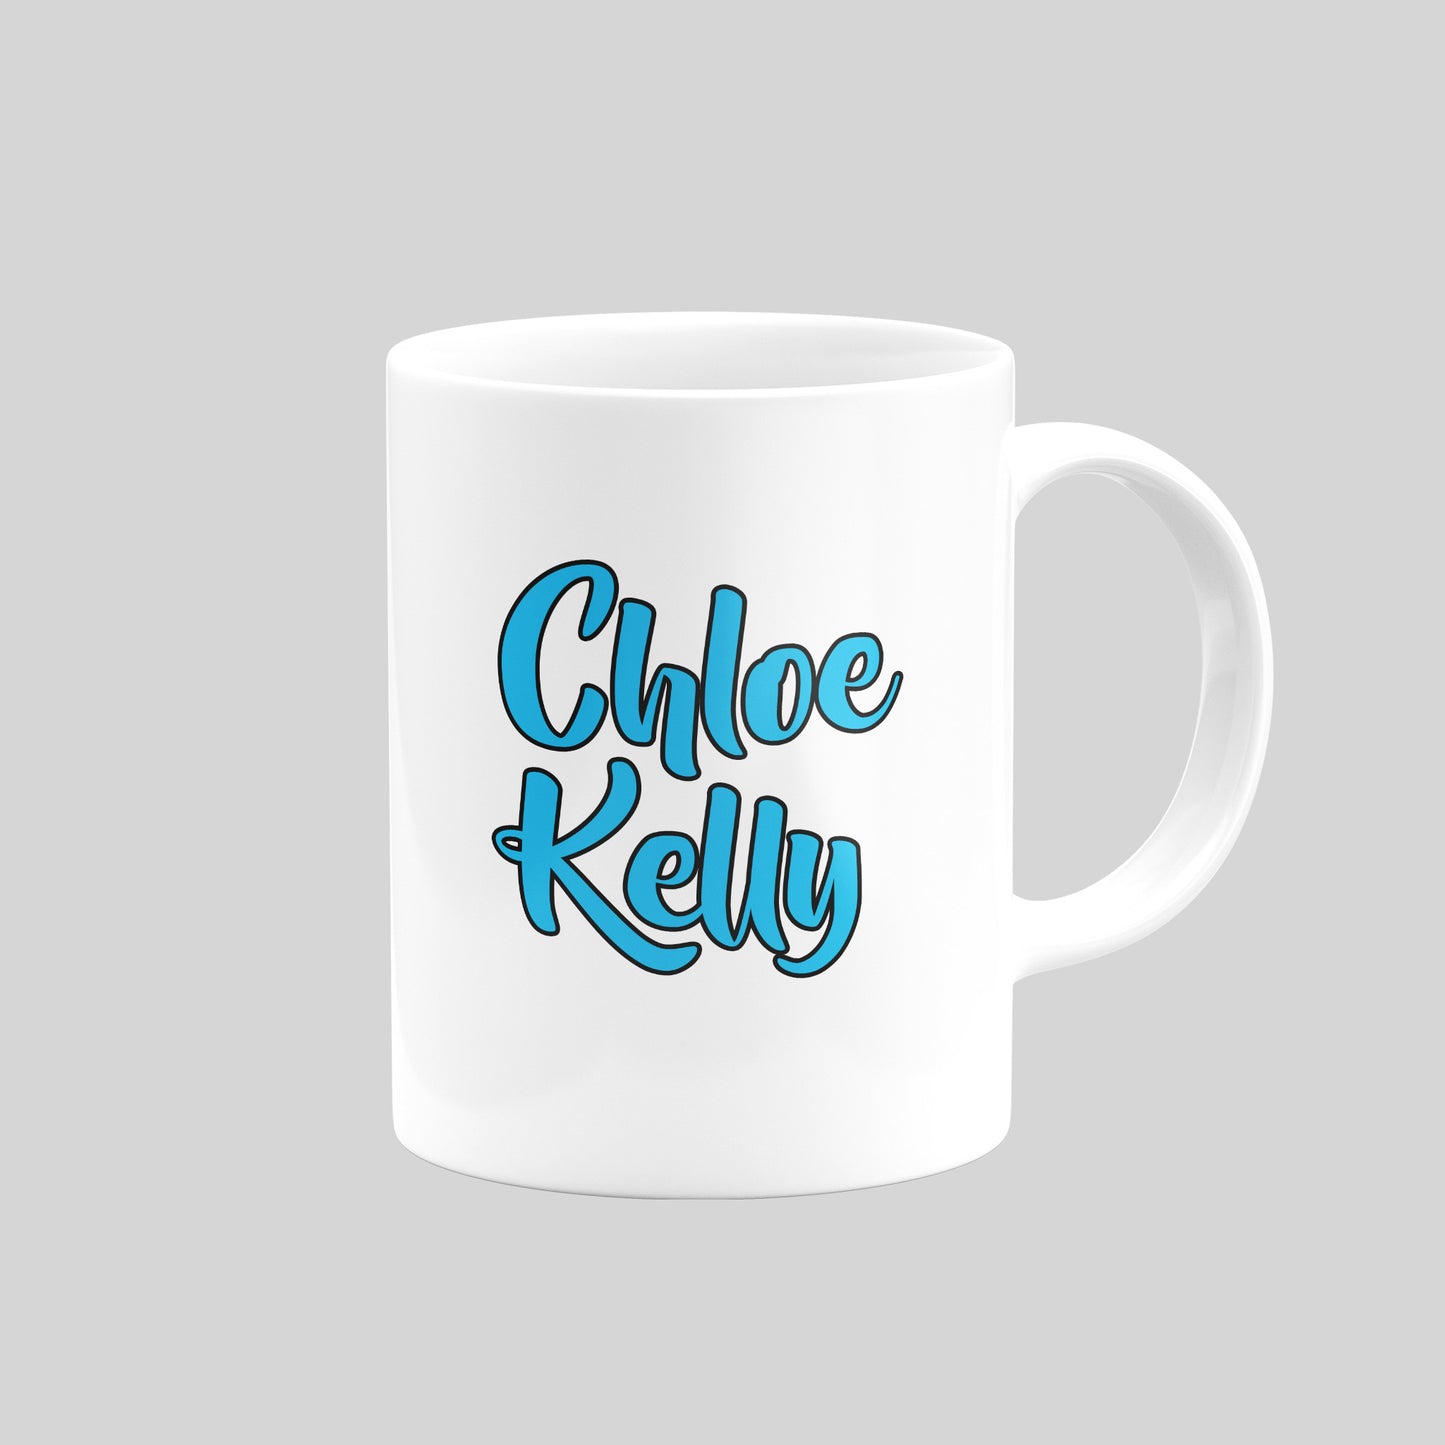 Chloe Kelly Man City Mug